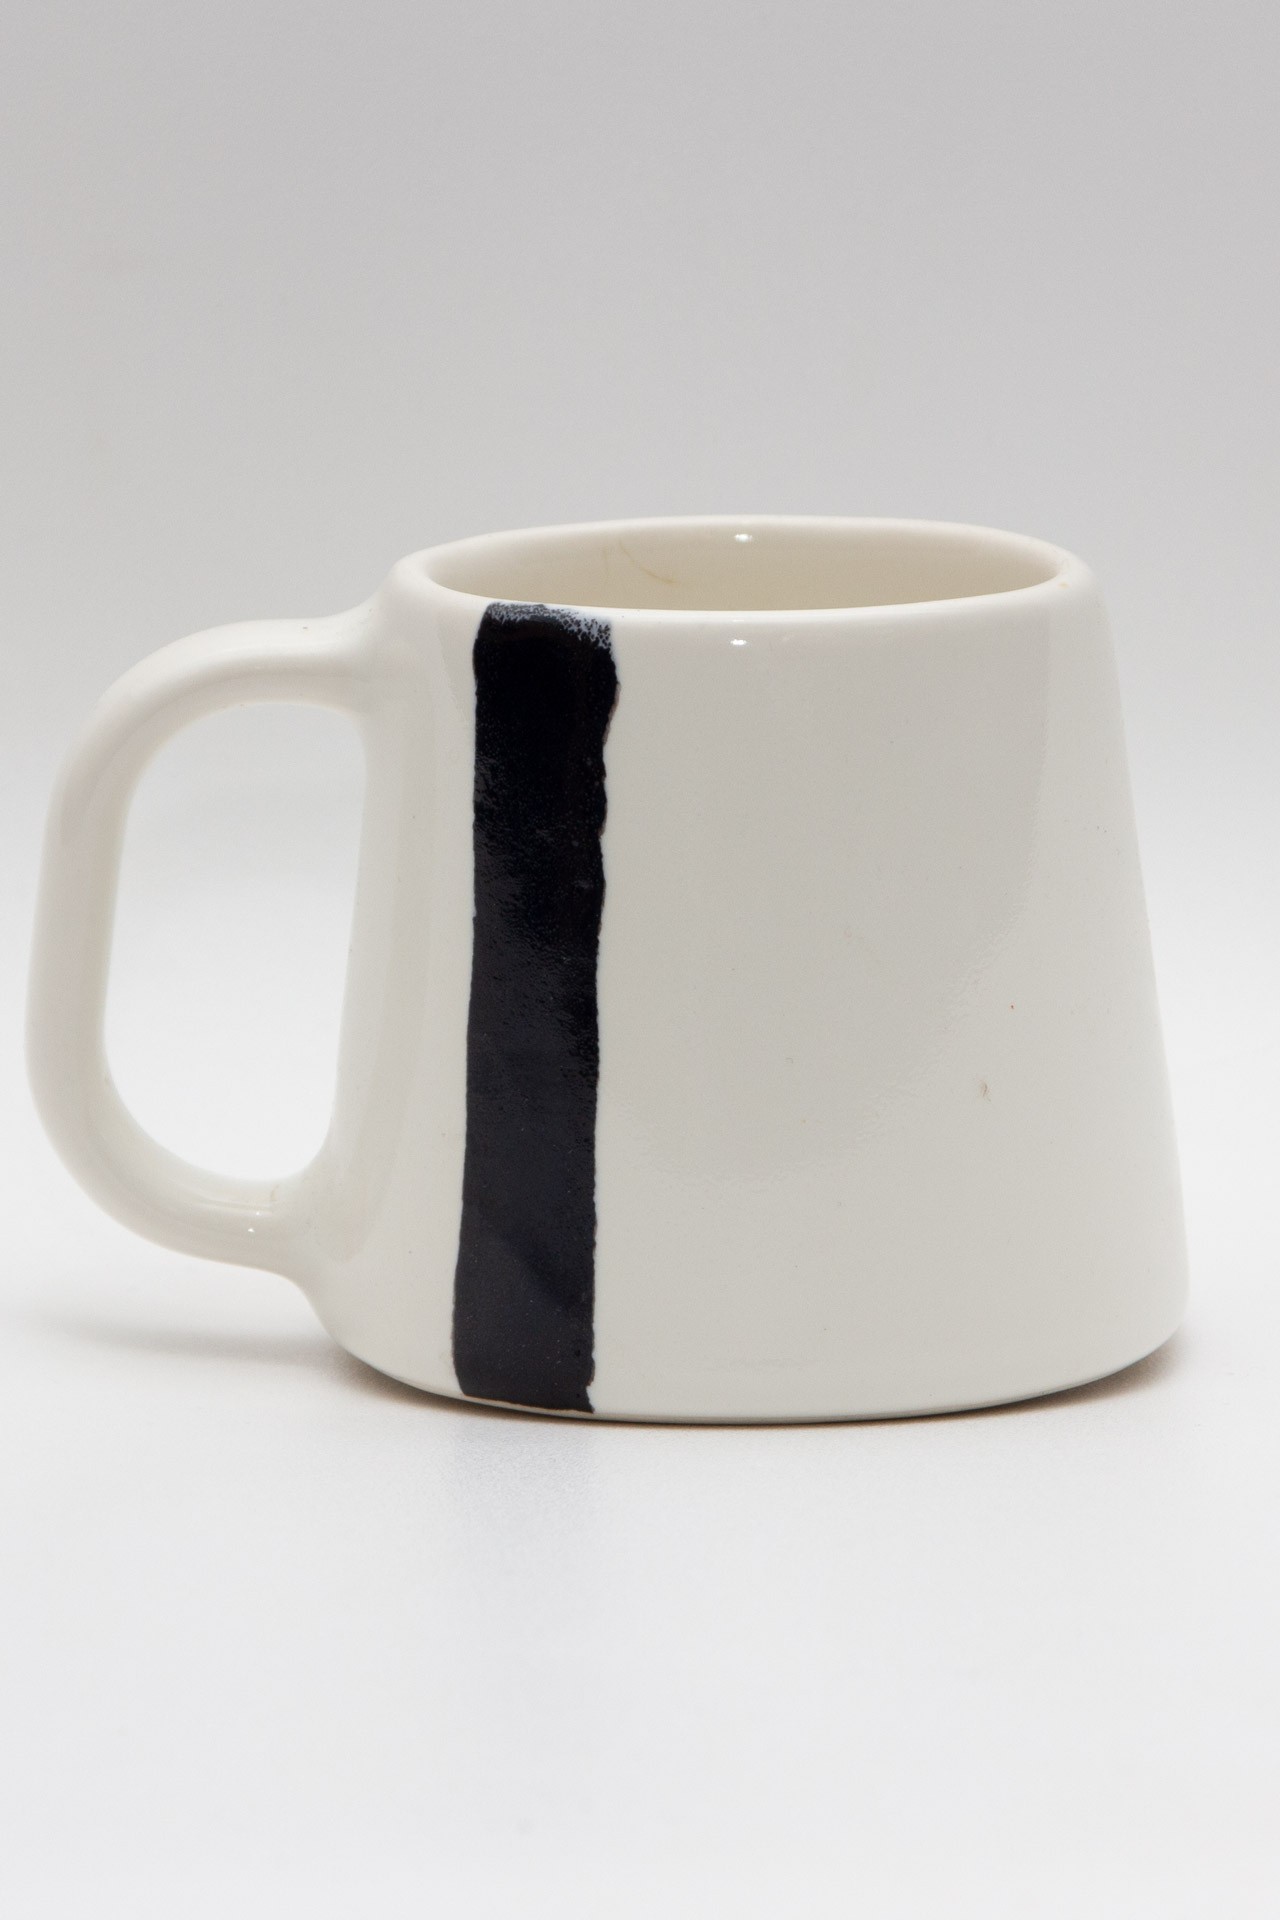 Handmade white ceramic mug with a black stripe